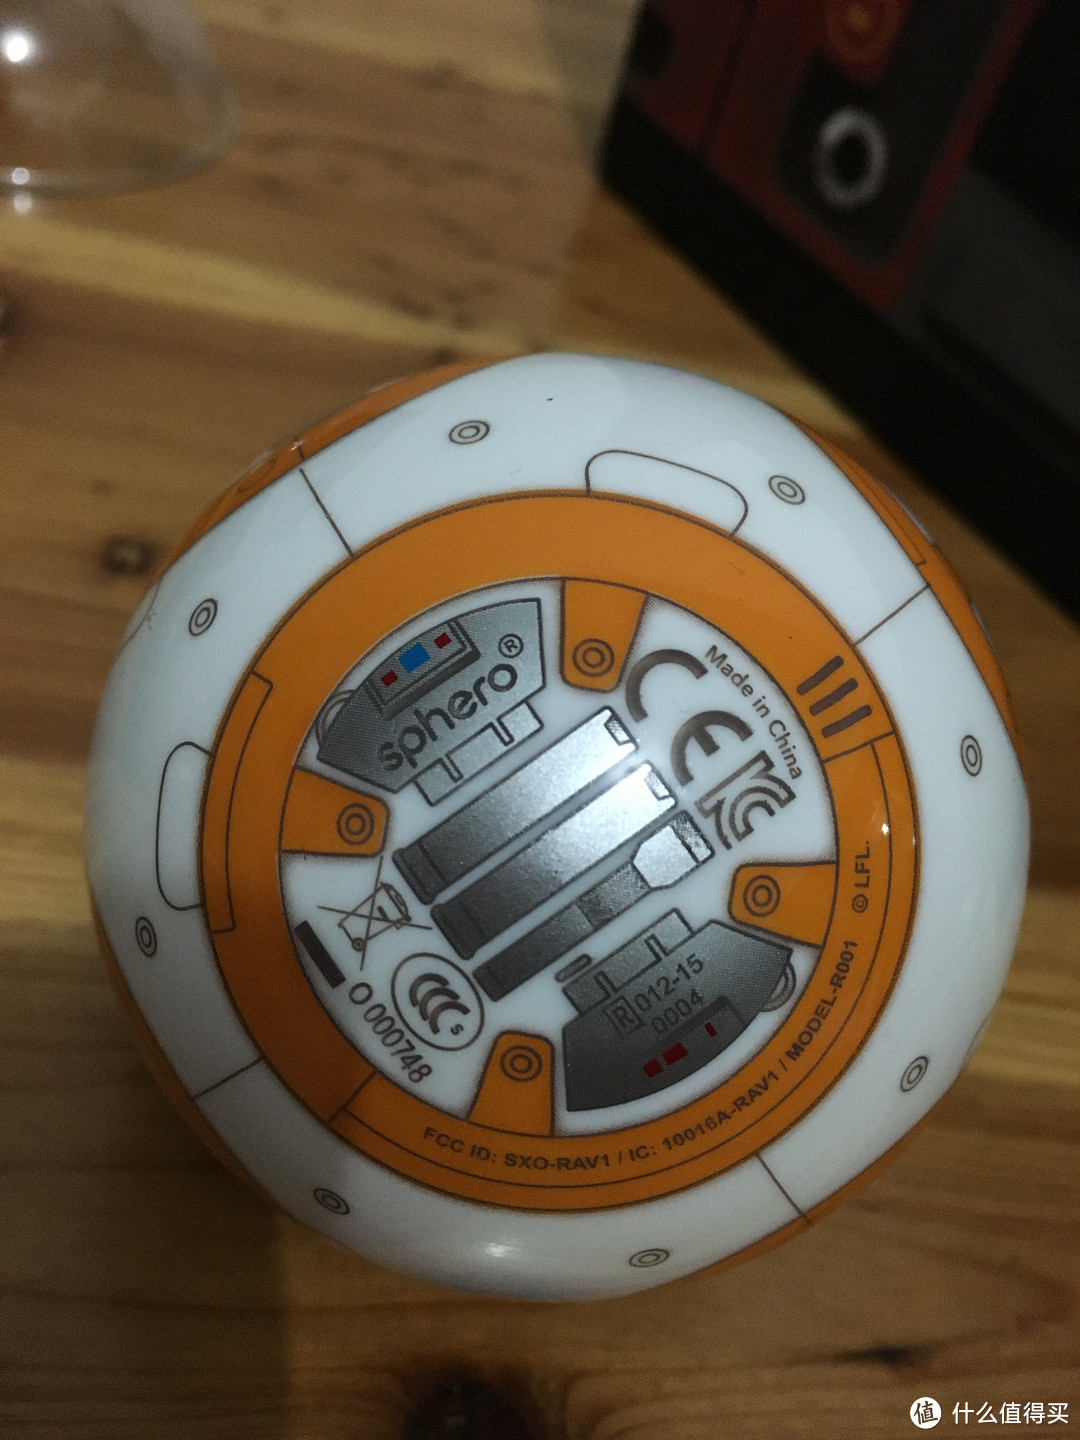 愿原力与你同在——Sphero 星球大战 原型机器人 BB-8 智能球型机器人 评测